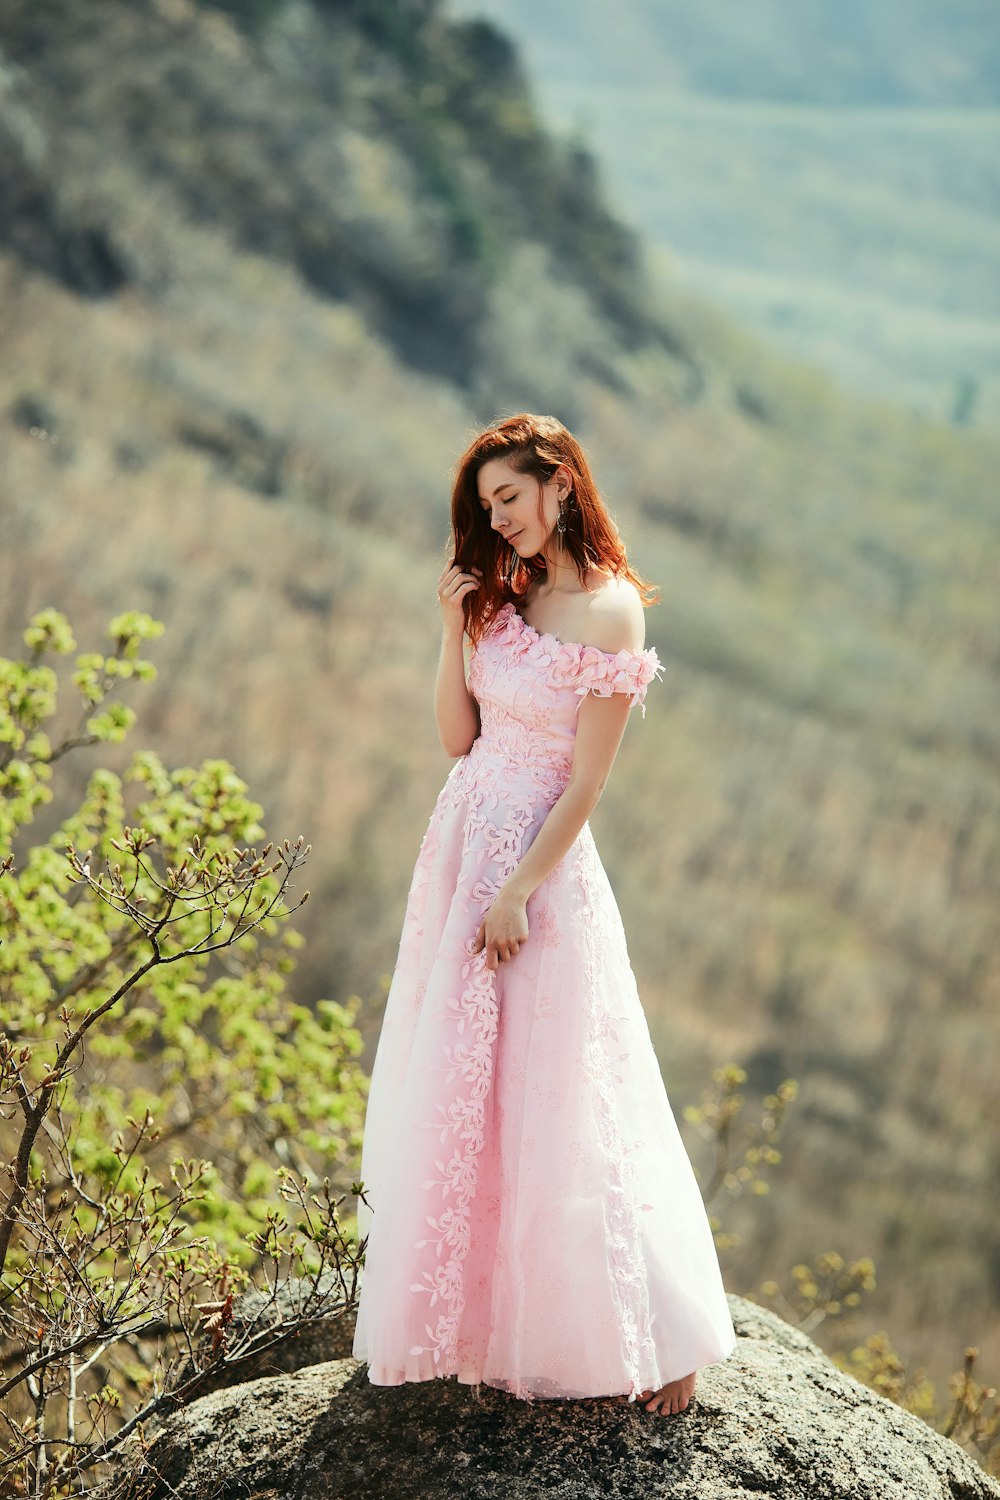 Frau in rosa Kleid, die tagsüber in der Nähe von Green Tree steht